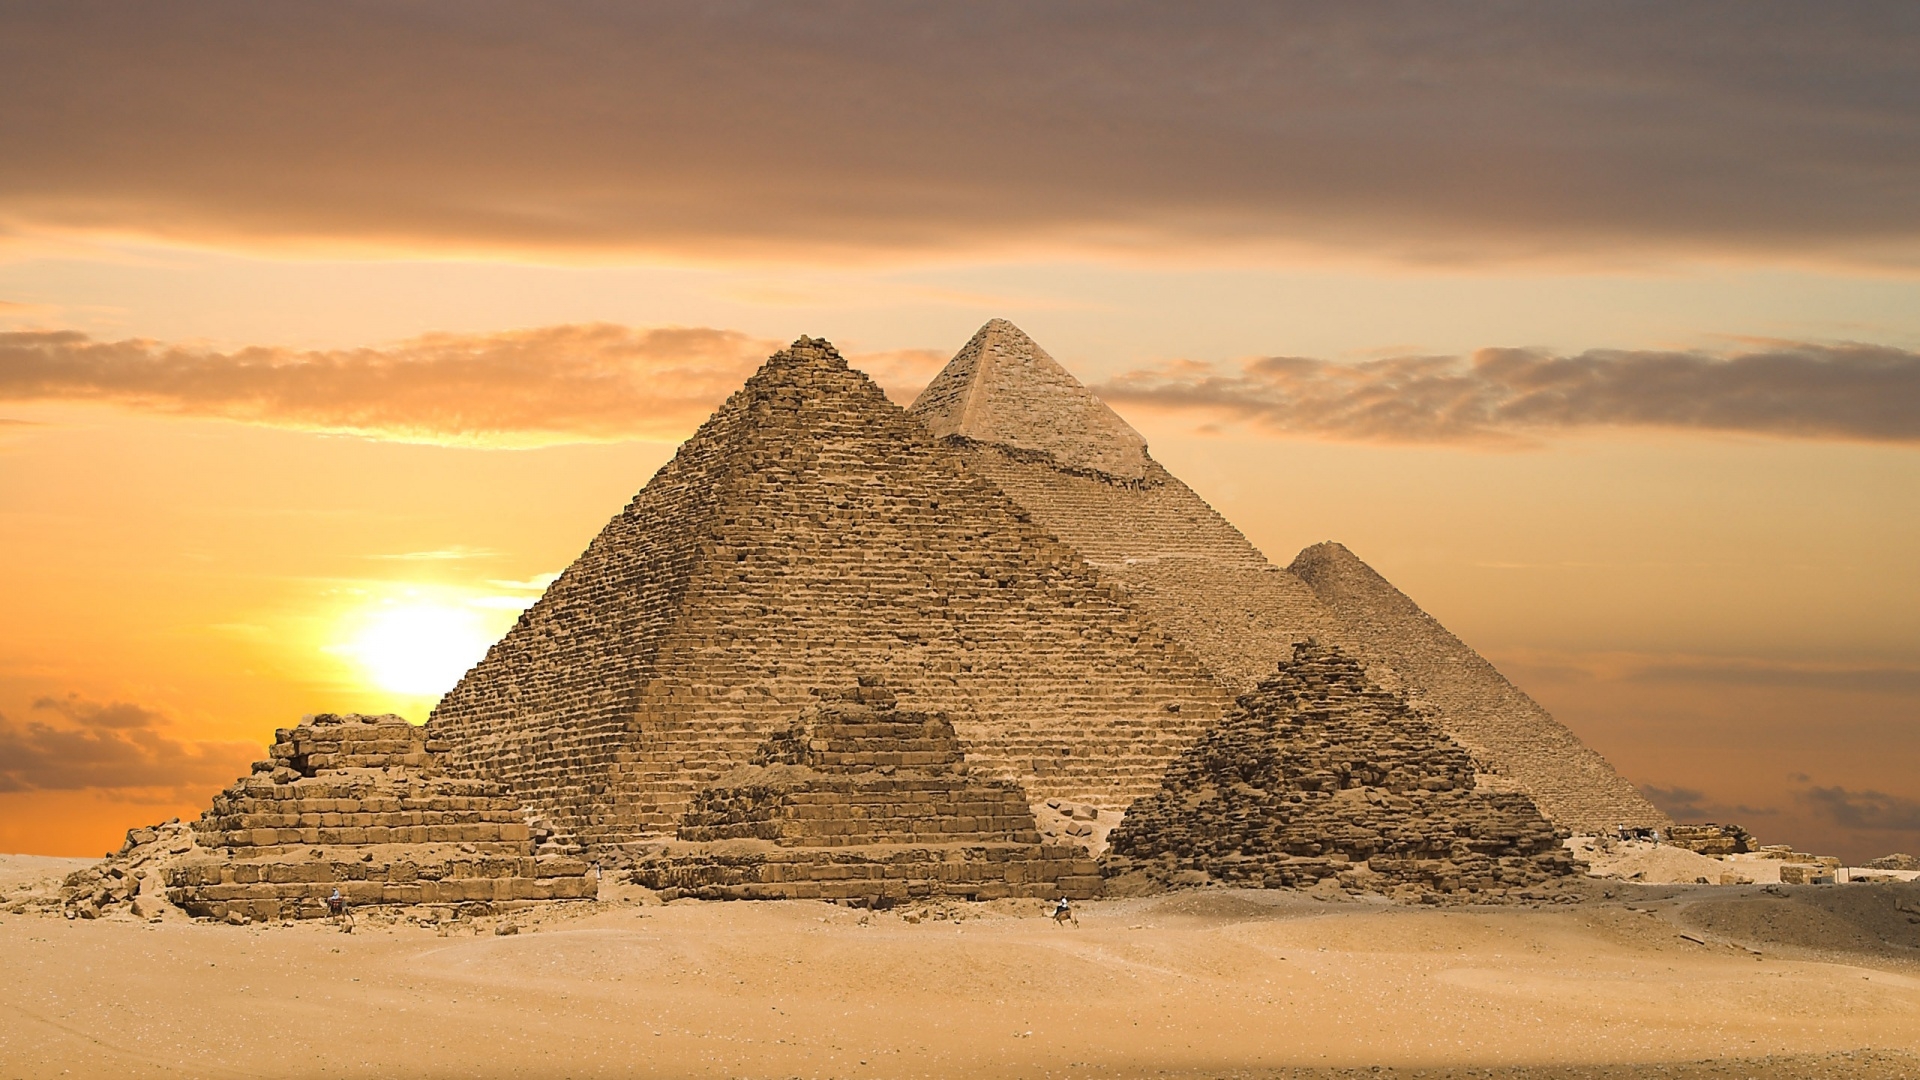 Популярные заставки и фоны Египет на компьютер